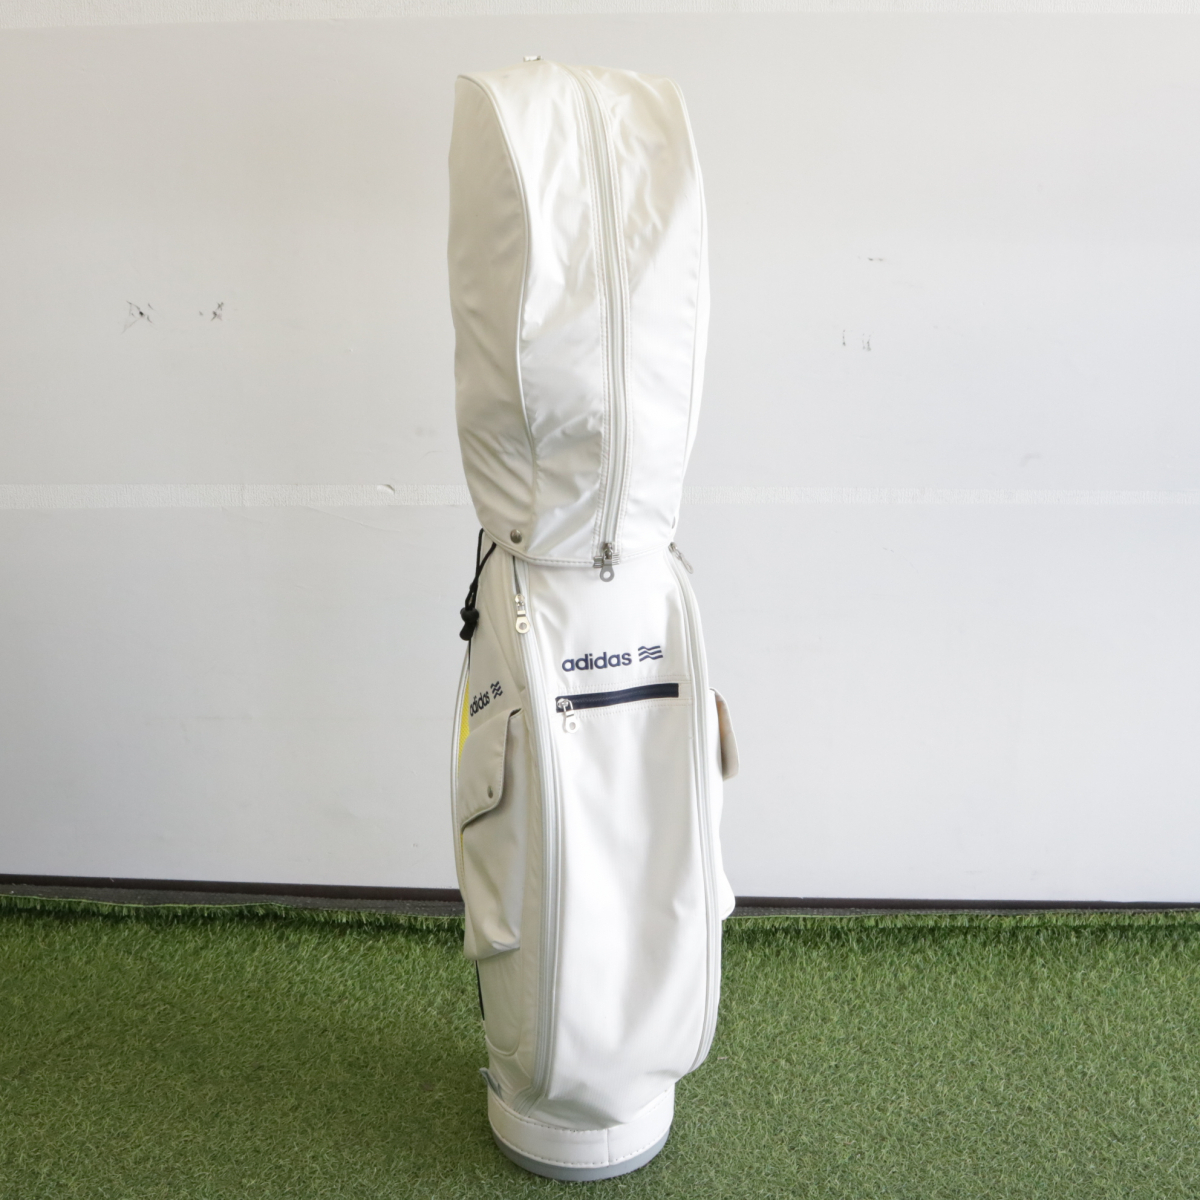 adidas E.F.Y.B ゴルフバッグ ホワイトカラー ゴルフ用具 バック スポーツ用品 趣味 初心者 練習 コレクション コレクター 取集 003FCMFR67_画像9